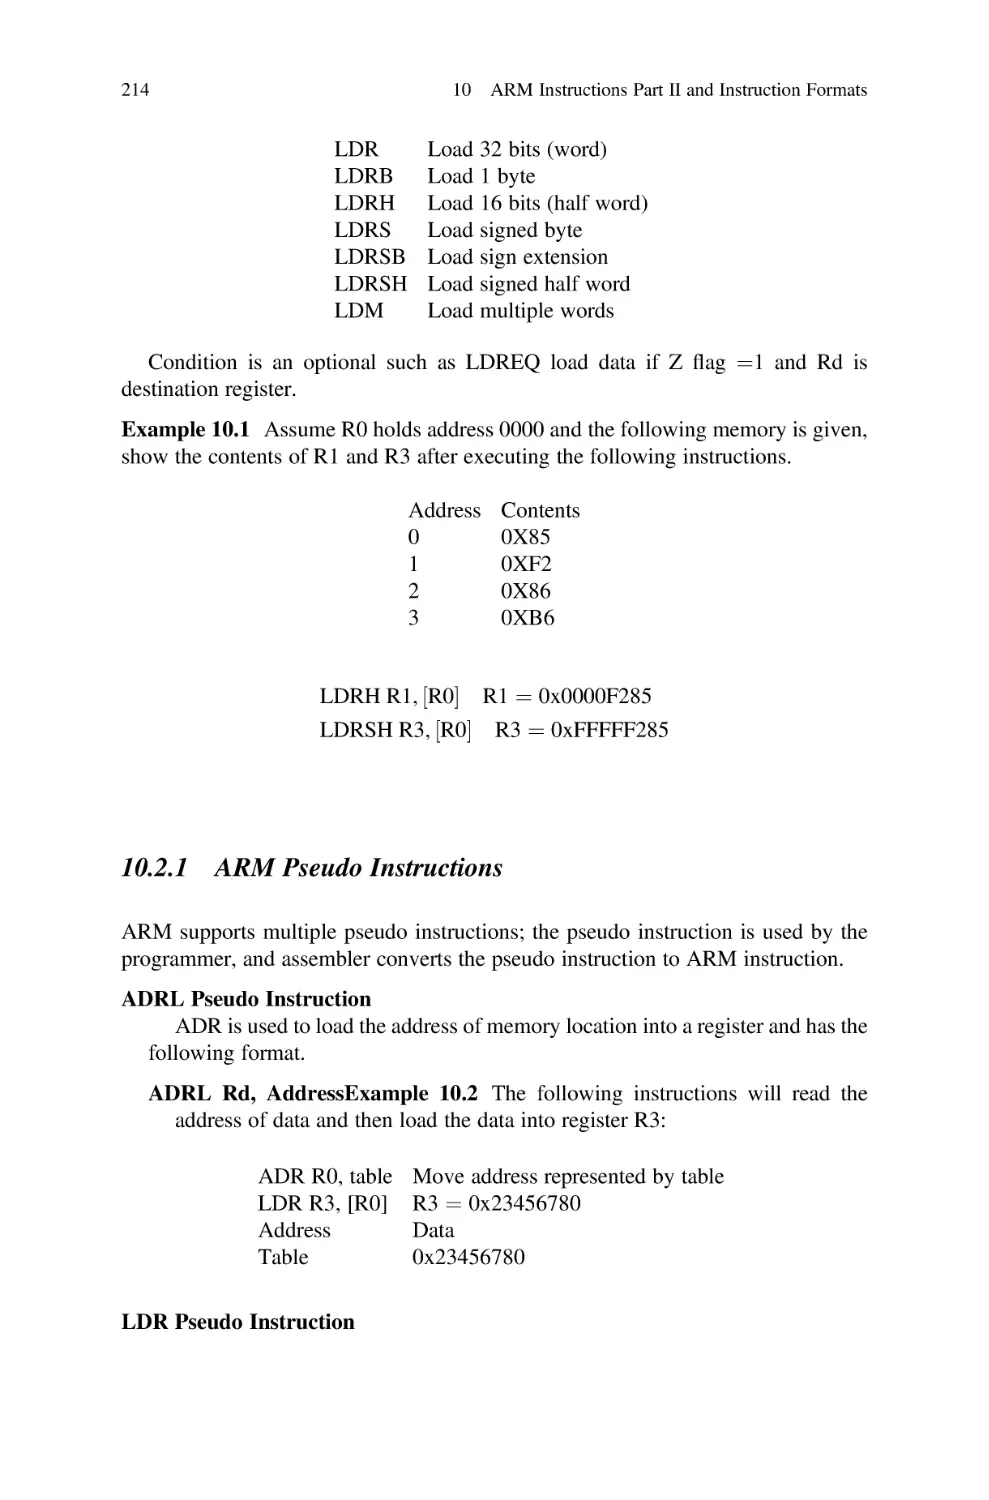 10.2.1 ARM Pseudo Instructions